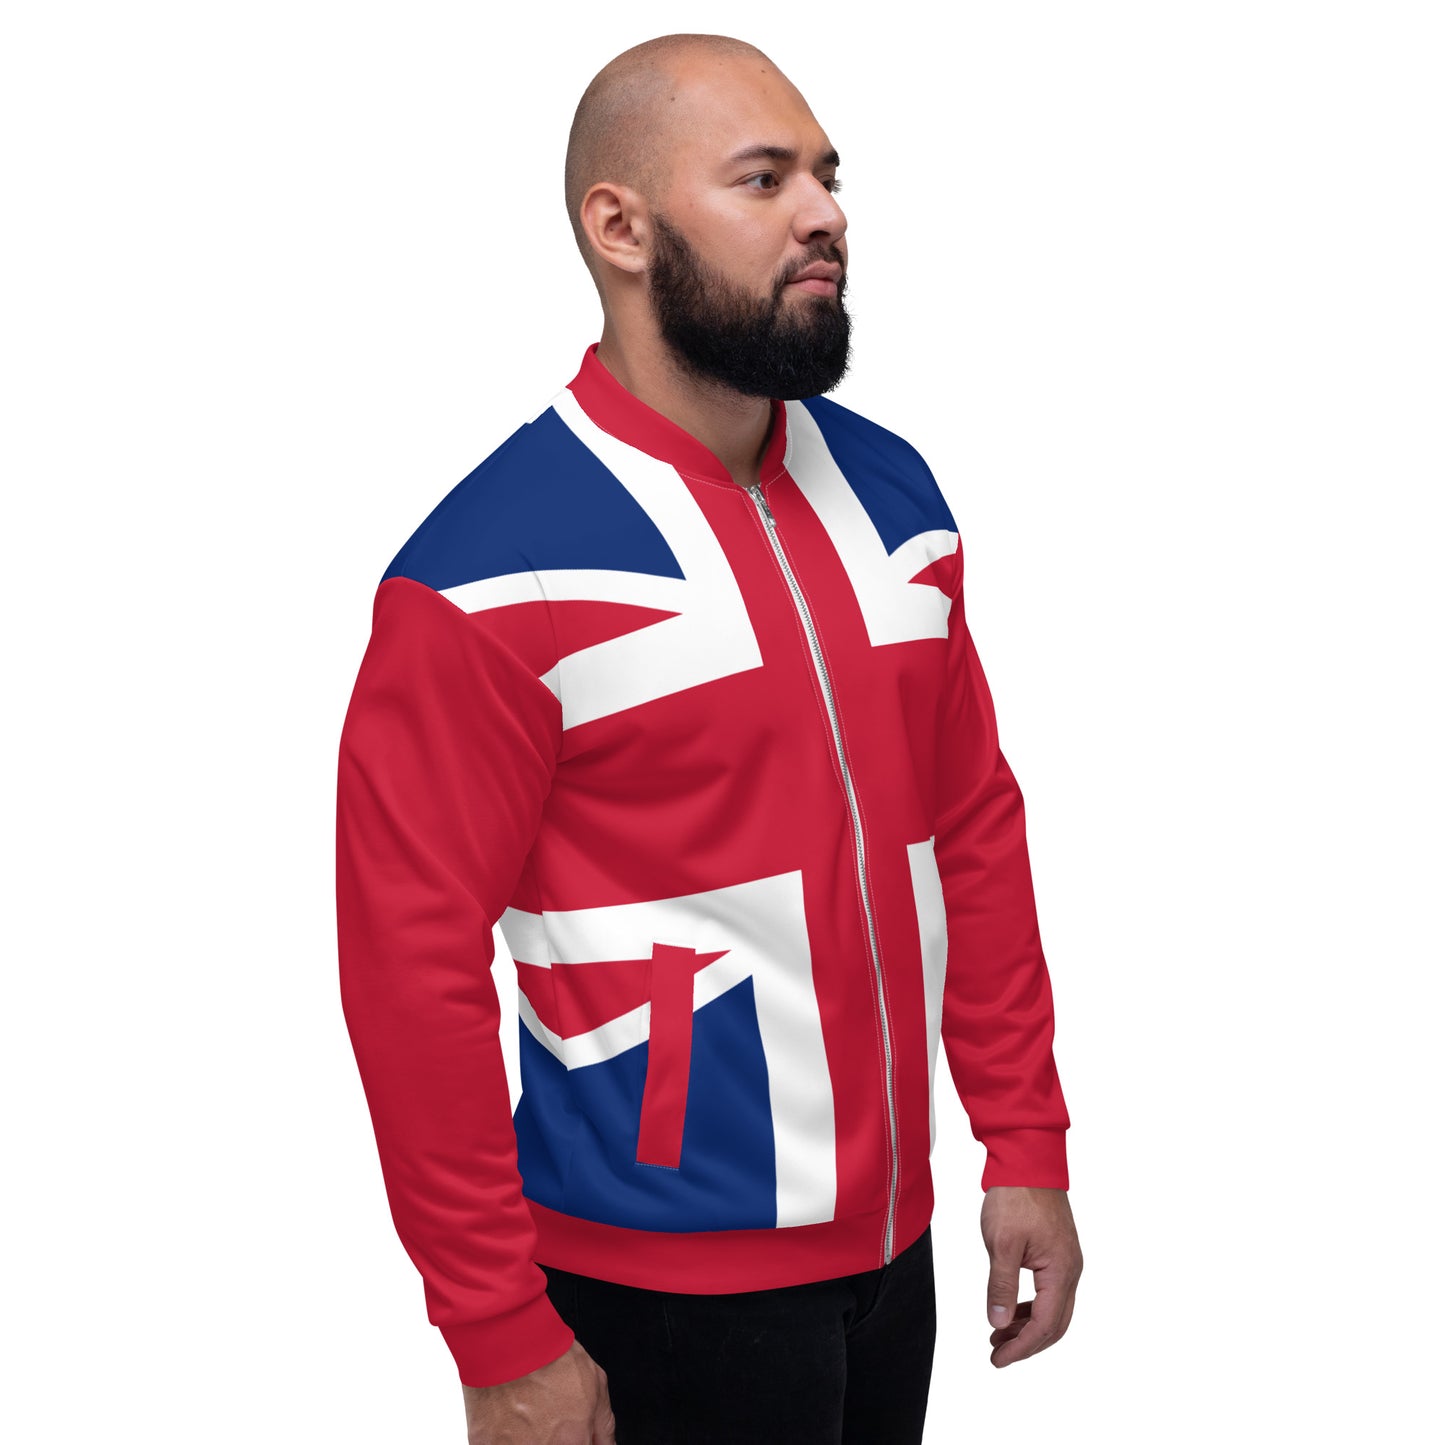 Union Jack Jacket / Bomber Jacket / Unisex Jacket / Union Jack Clothing / Union Jack Outfit